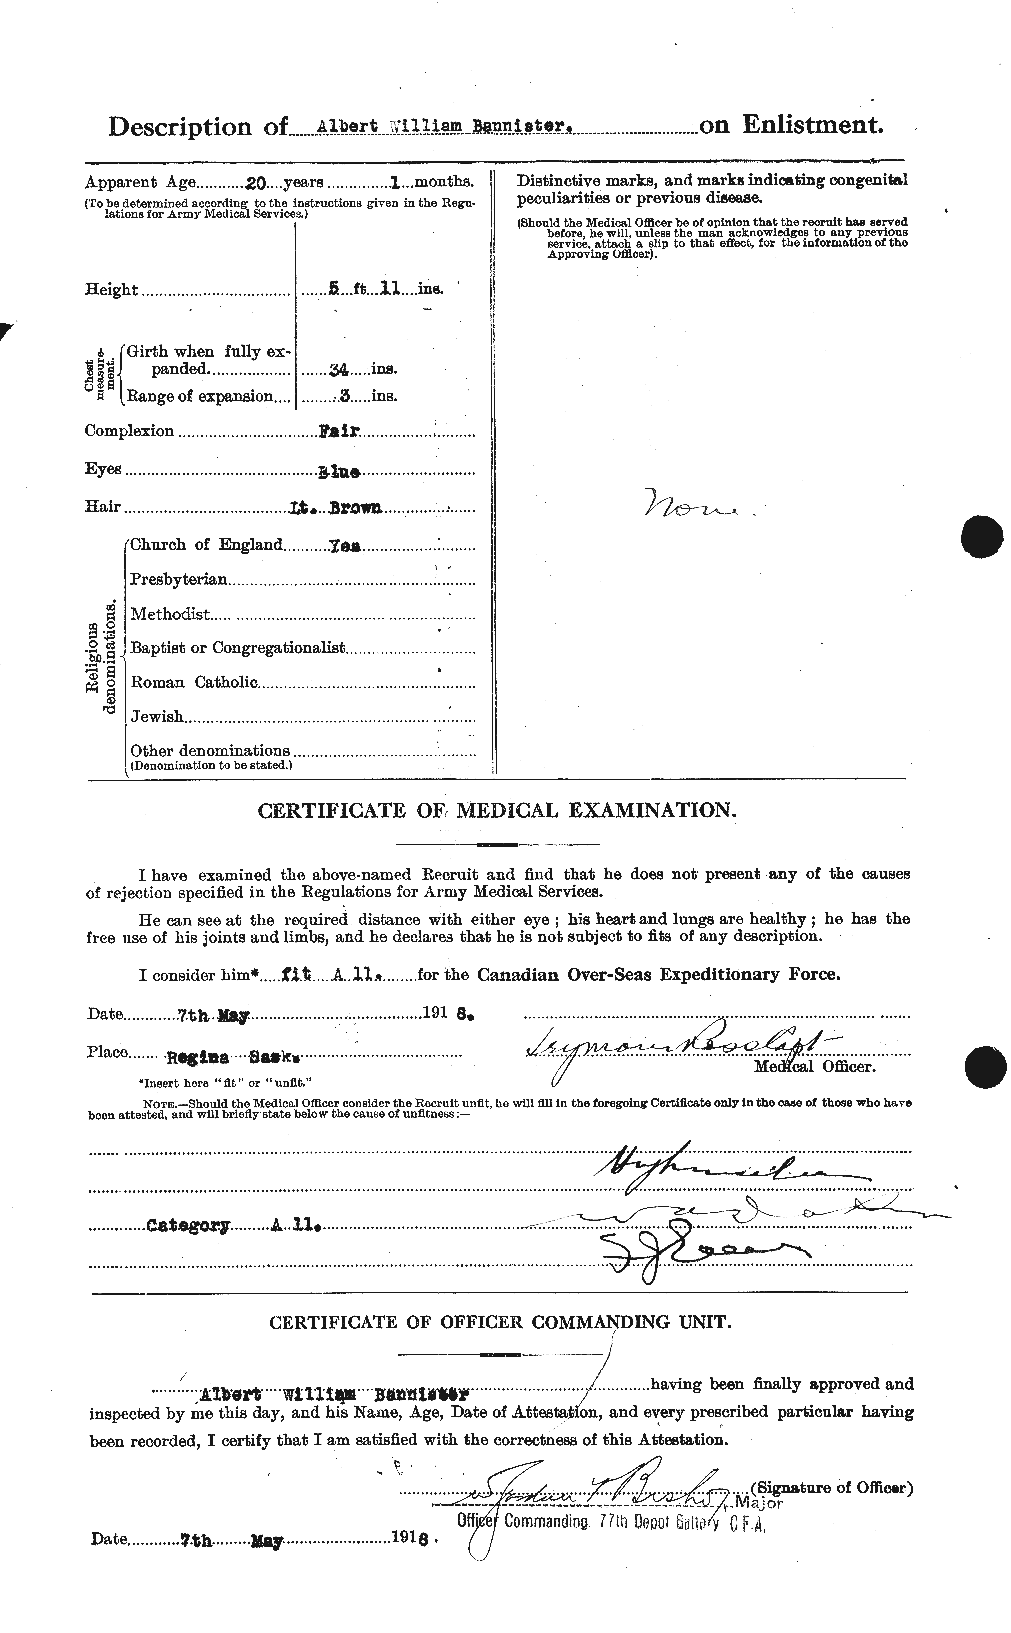 Dossiers du Personnel de la Première Guerre mondiale - CEC 224814b